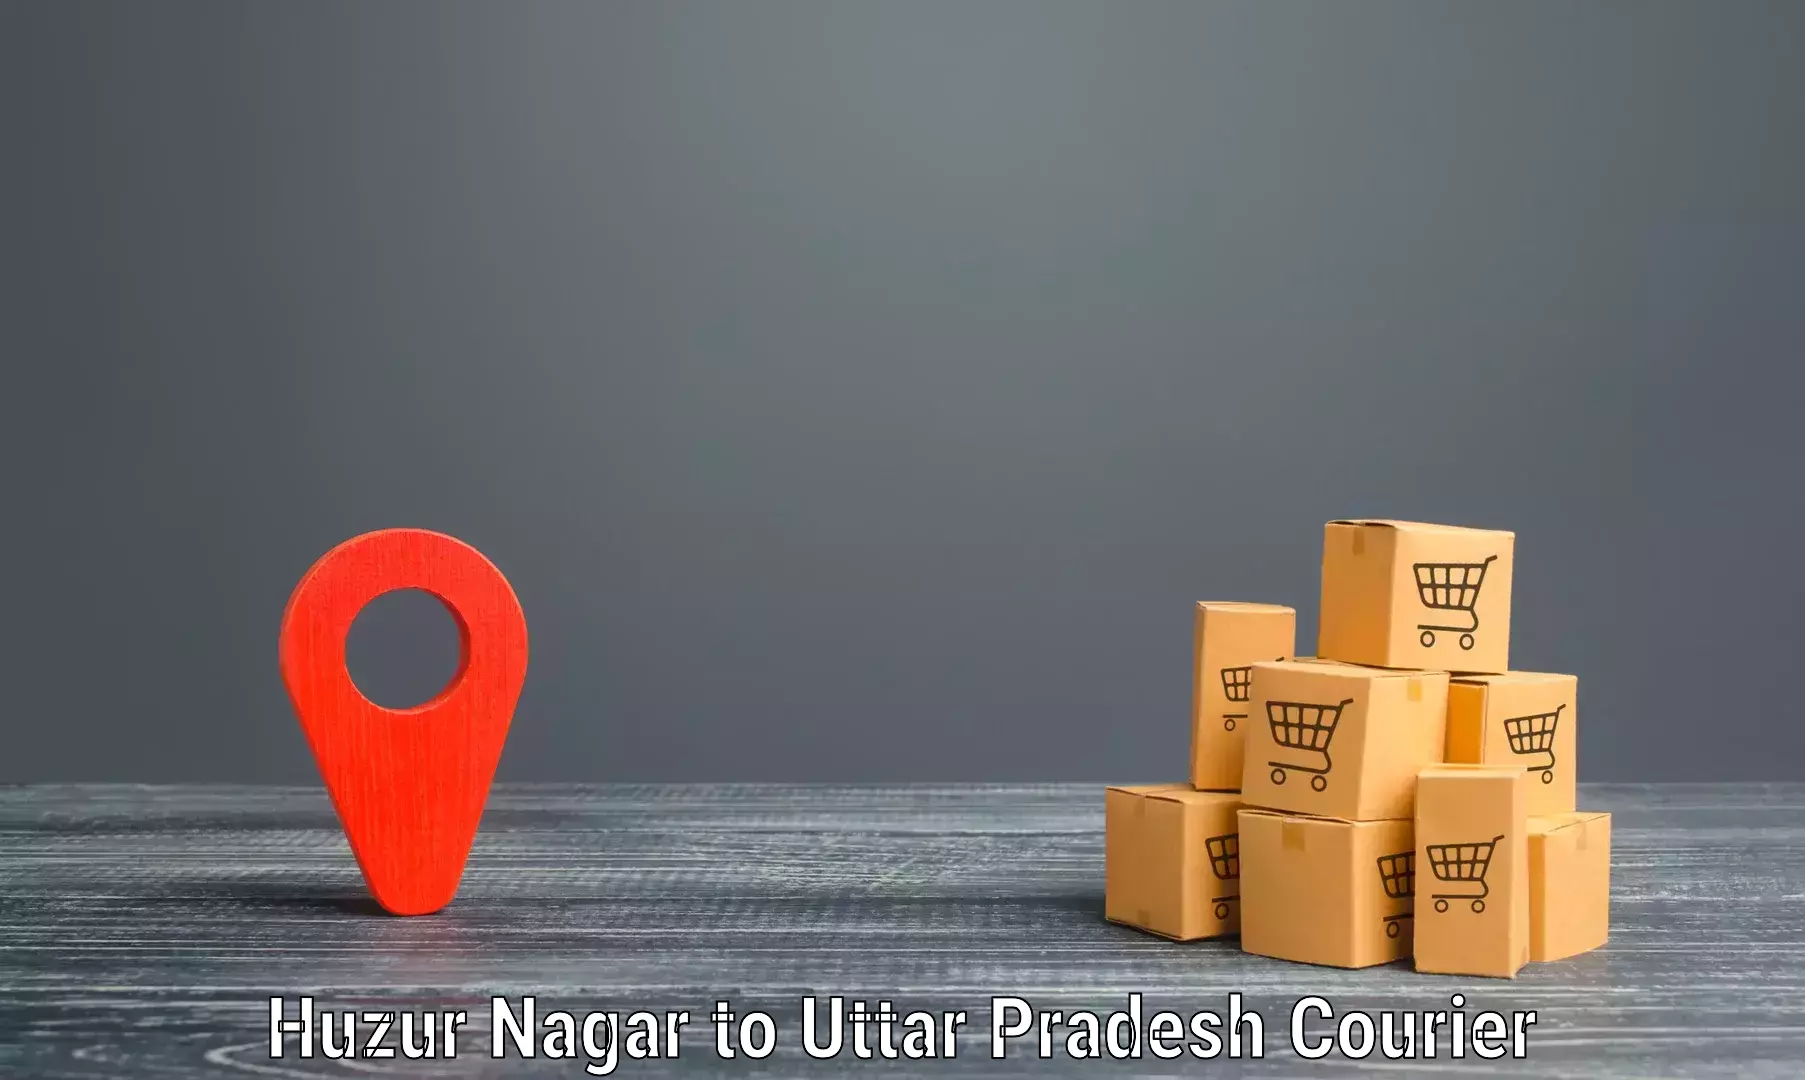 Innovative courier solutions Huzur Nagar to Hamirpur Uttar Pradesh